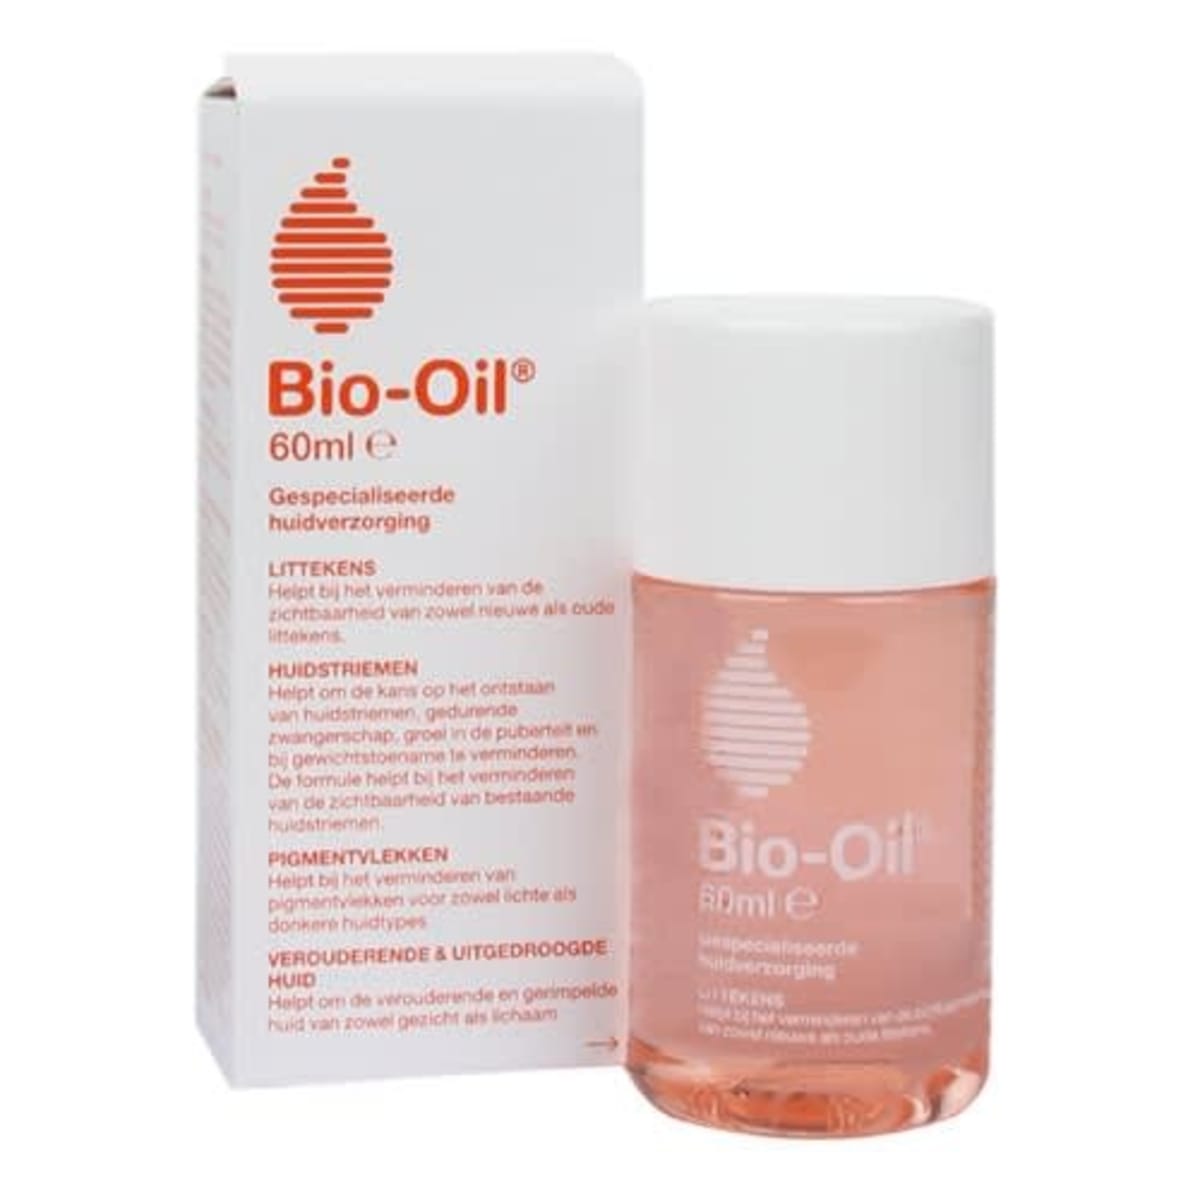 Bio-Oil®